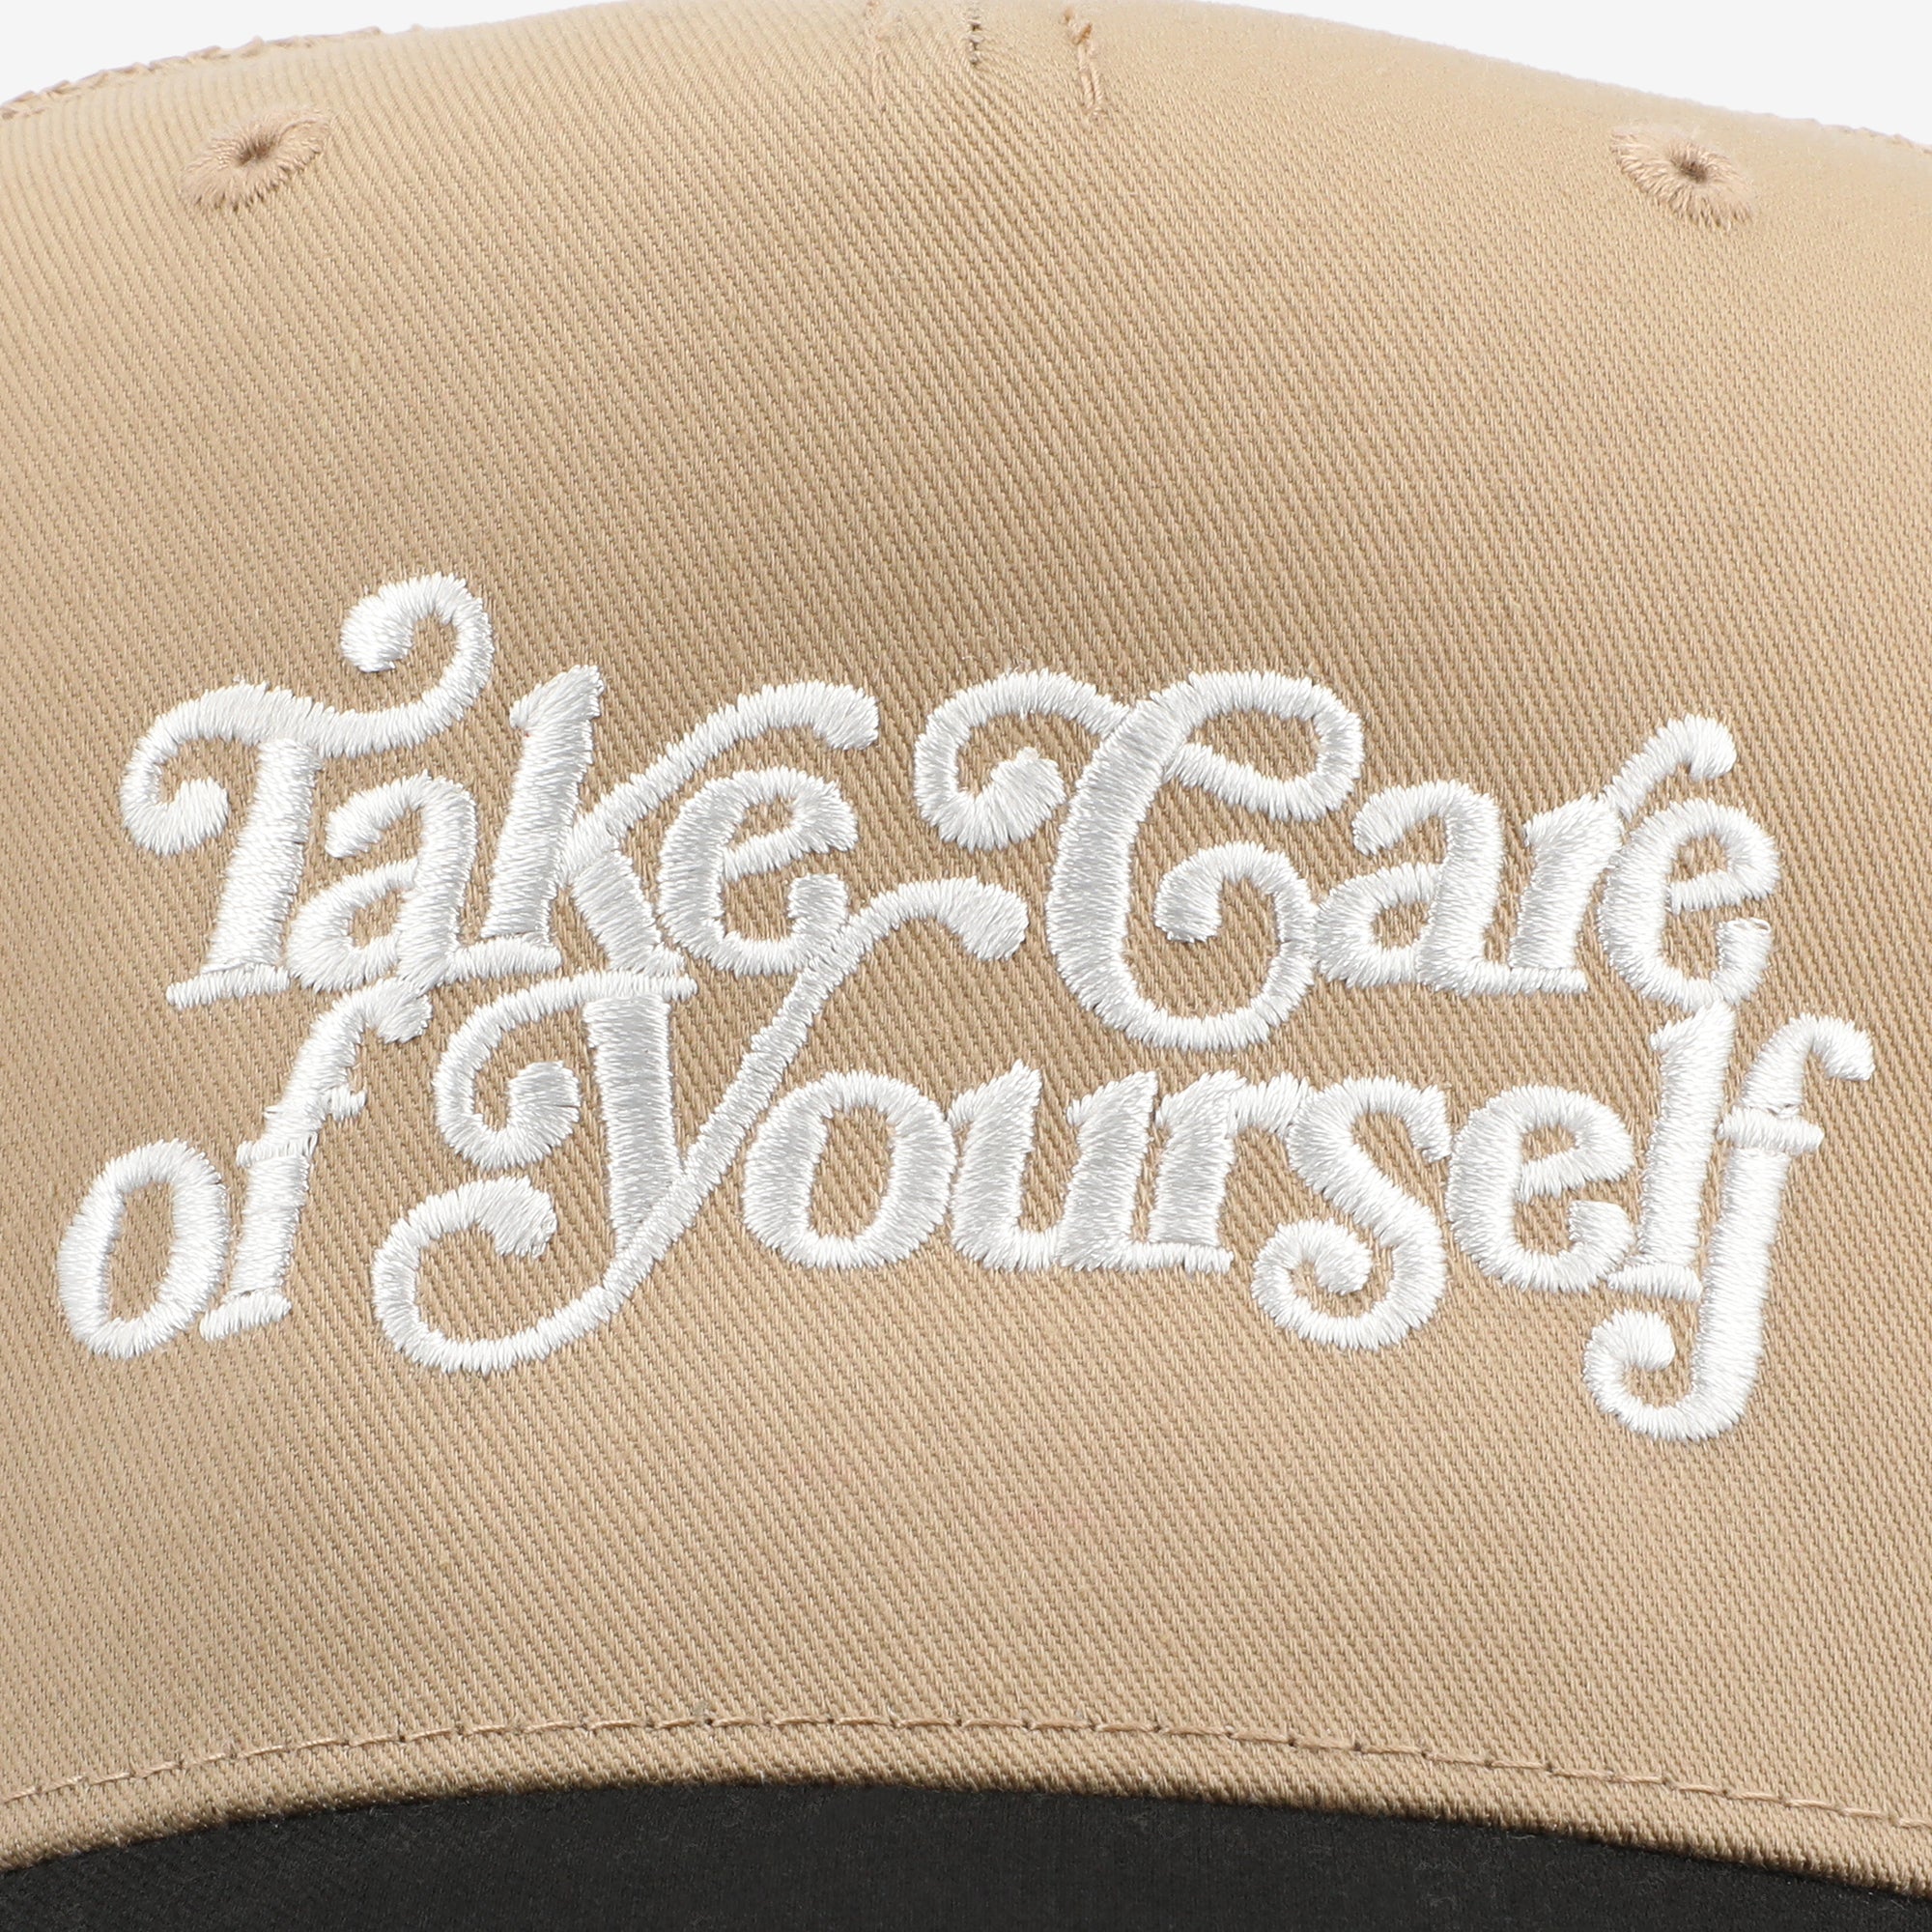 Take Care Hat in Black/Khaki